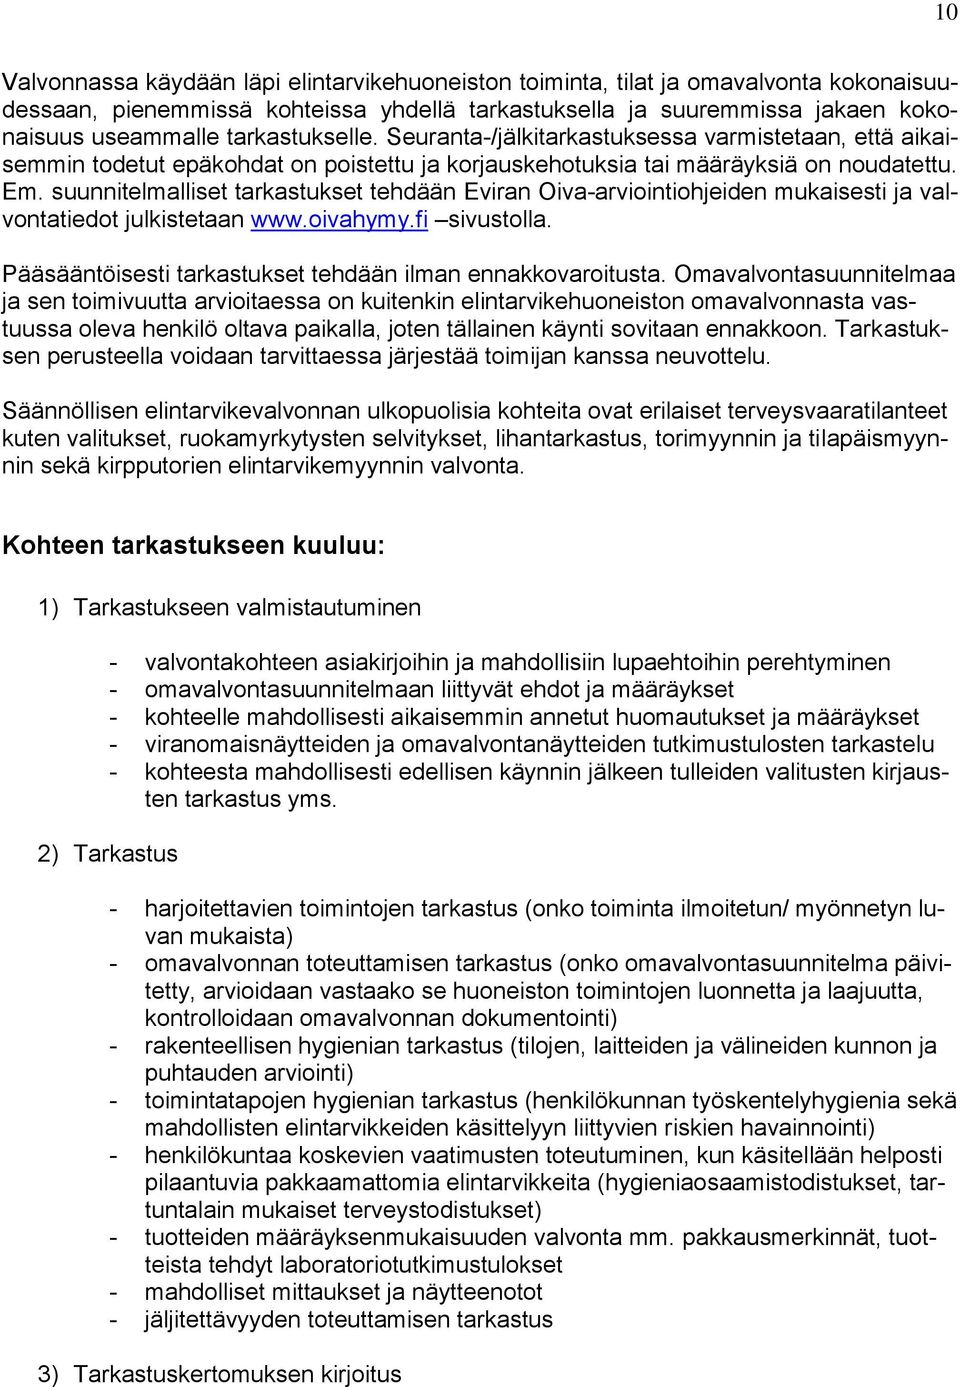 suunnitelmalliset tarkastukset tehdään Eviran Oiva-arviointiohjeiden mukaisesti ja valvontatiedot julkistetaan www.oivahymy.fi sivustolla. Pääsääntöisesti tarkastukset tehdään ilman ennakkovaroitusta.